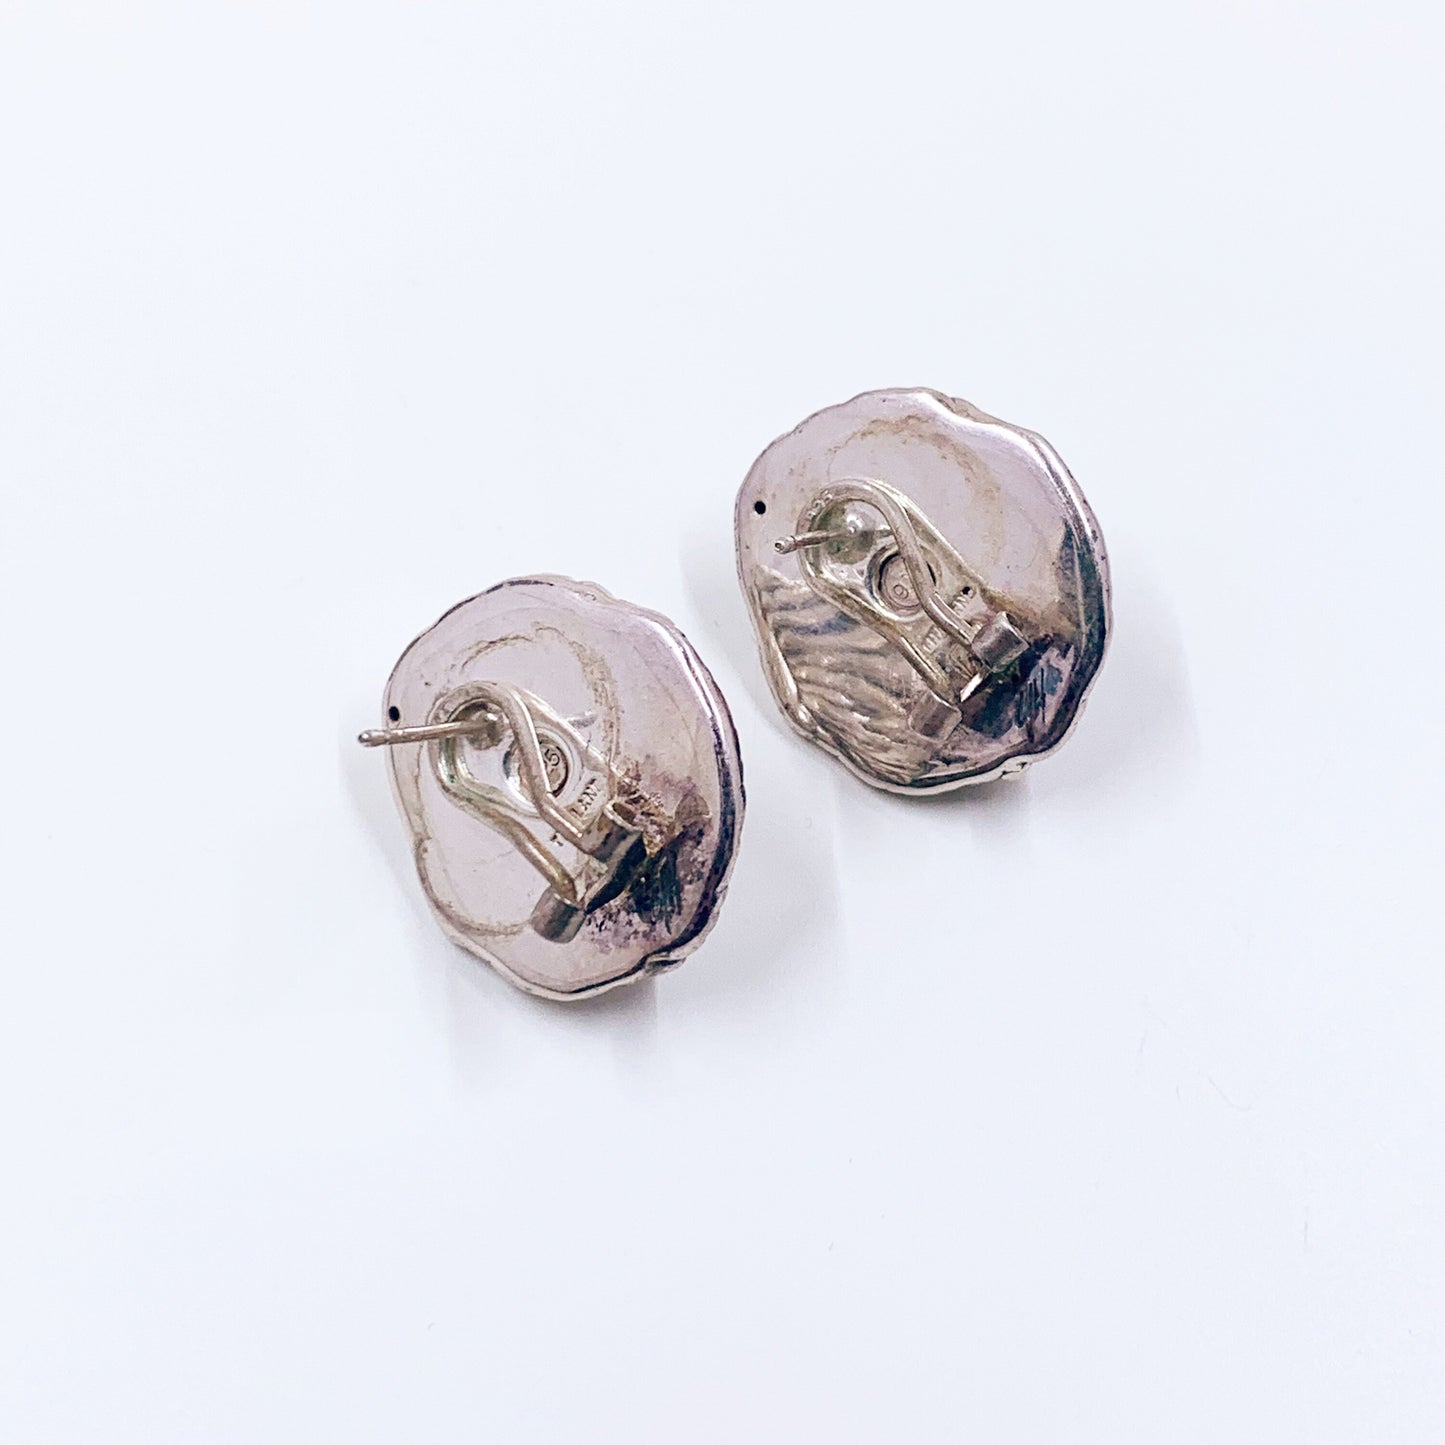 Vintage Silver Lion Earrings | Vintage Lion Head Earrings